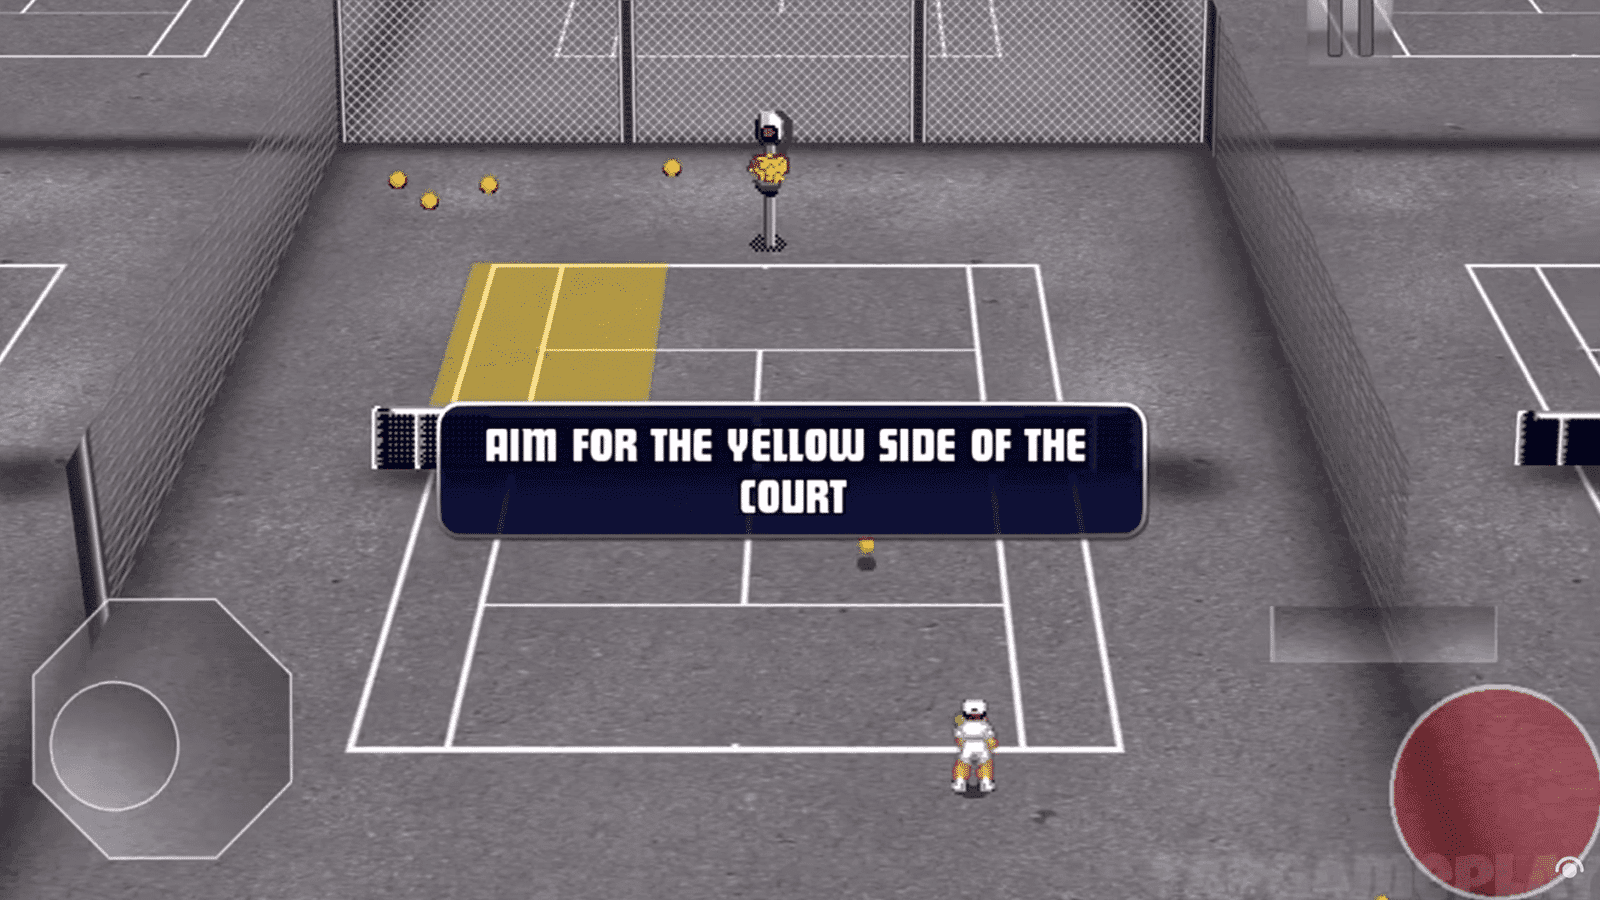 टेनिस चैंप्स एक प्रतिस्पर्धी मल्टीप्लेयर एनएफटी गेम है